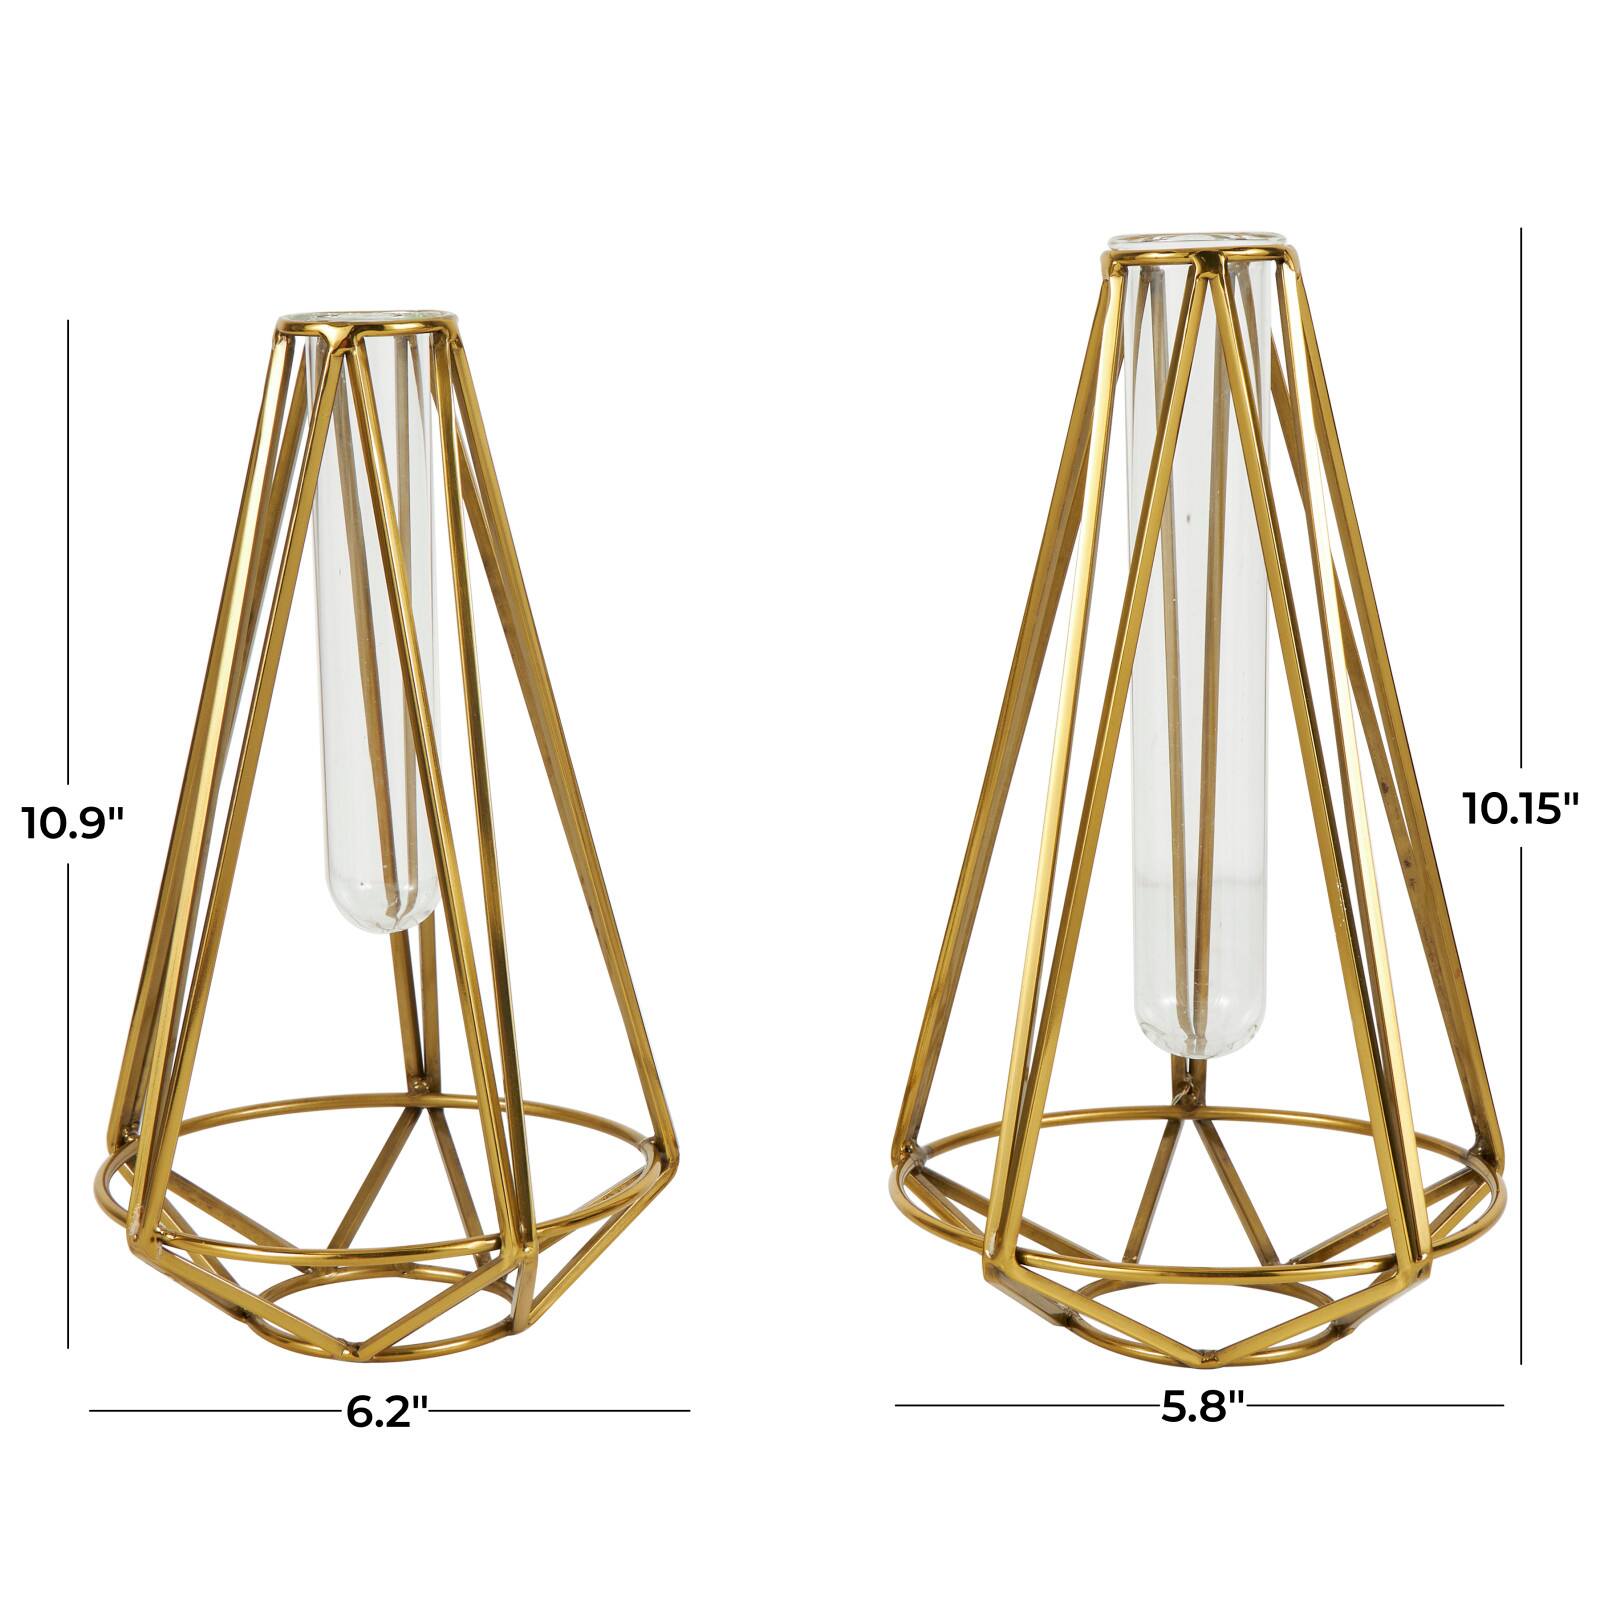 Gold Stainless Steel Geometric Test Tube Vase Set